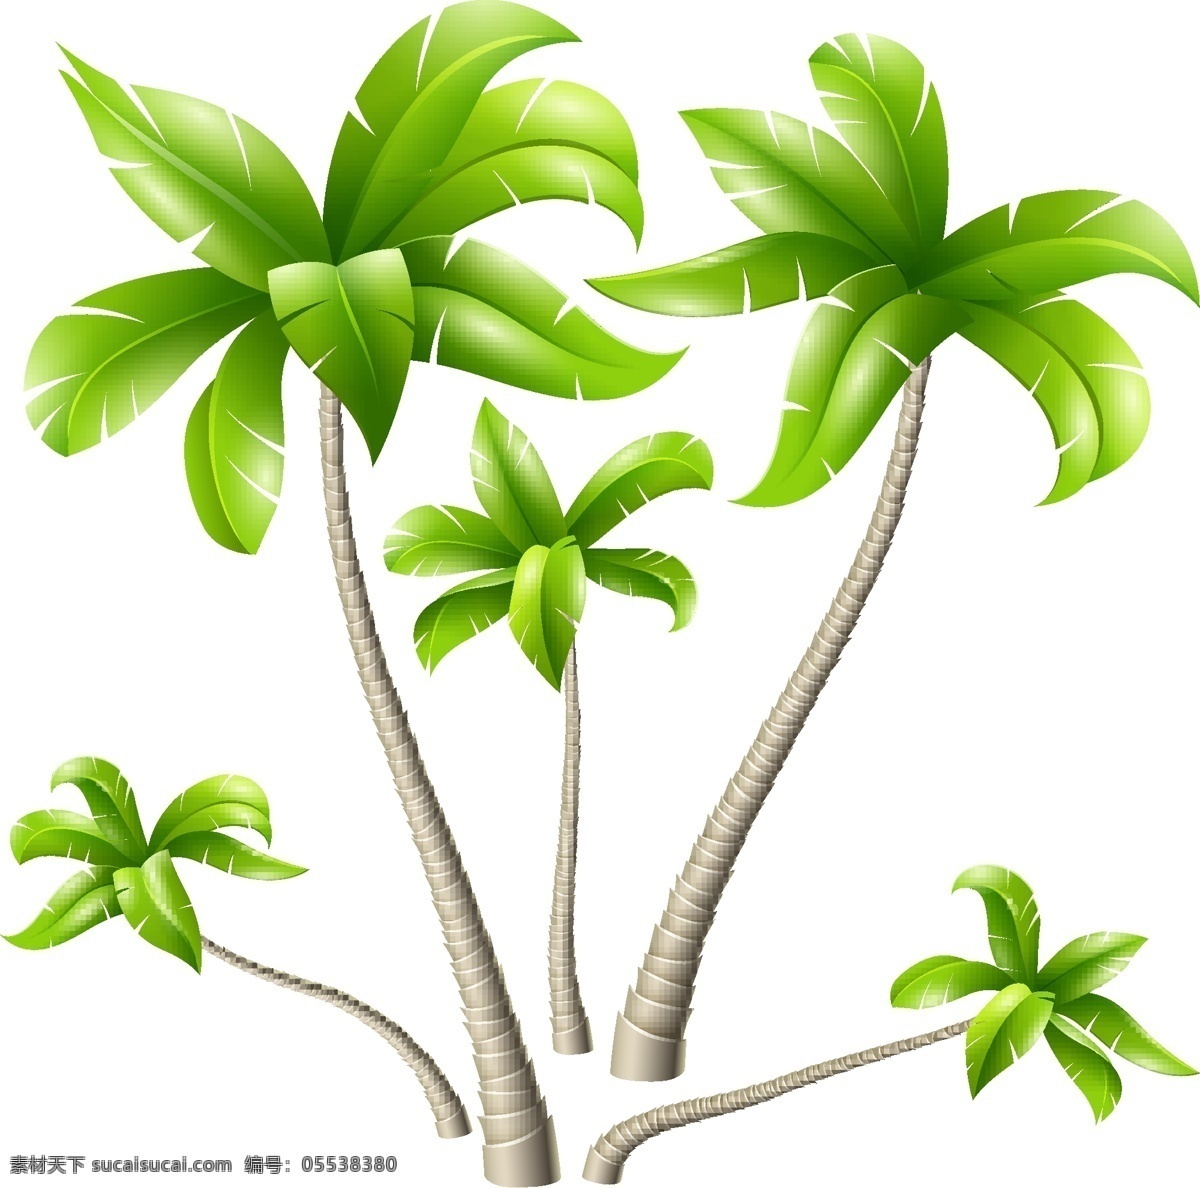 夏日 度假 沙滩 椰树 矢量 绿色 植物 树枝 卡通 椰子树 沙滩树木 小清新 填充 插画 背景 海报 广告 包装 印刷 夏天